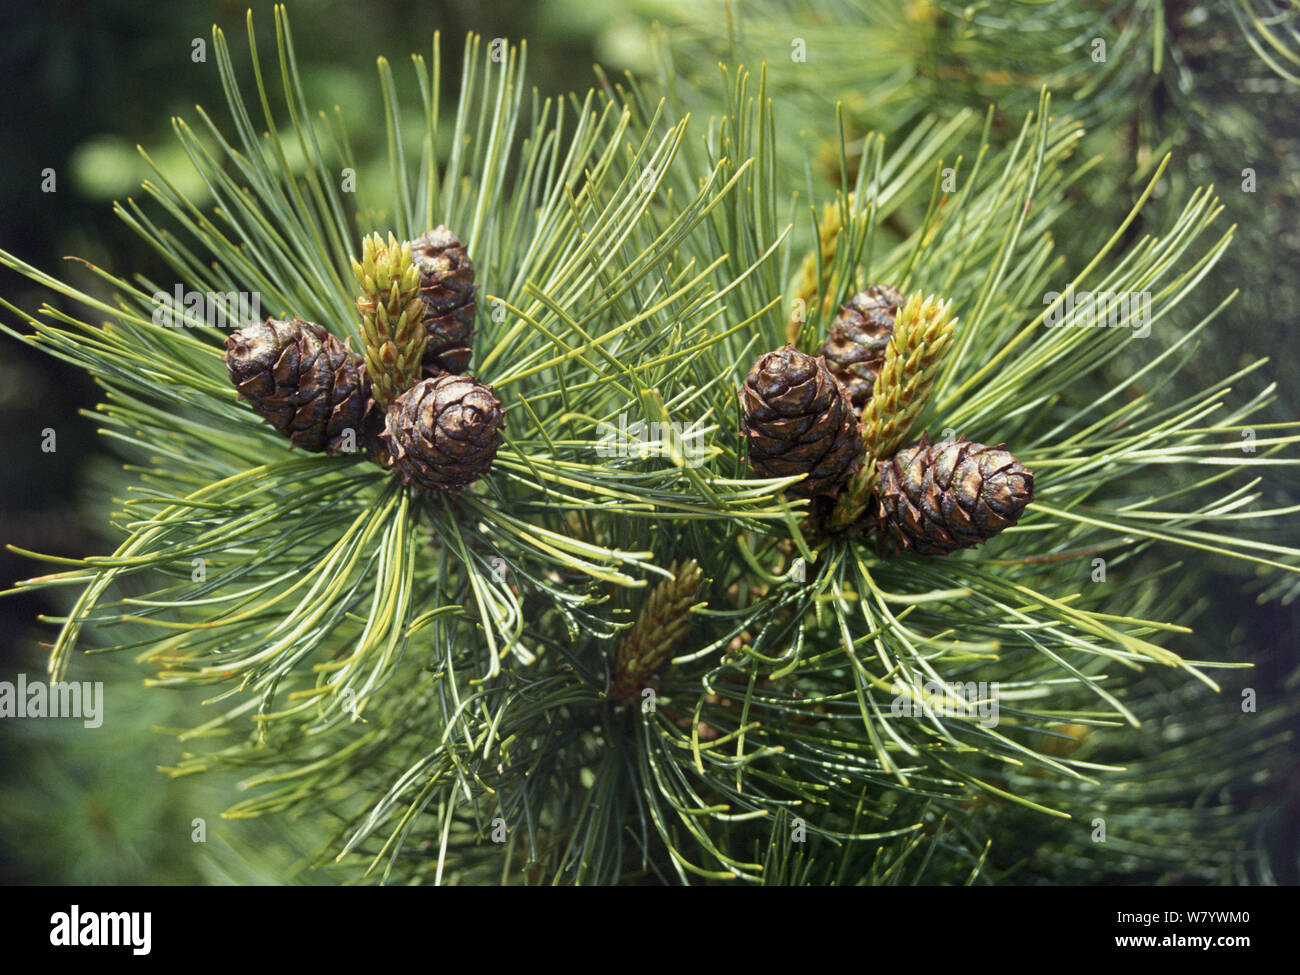 Pino enano siberiano (Pinus pumila) conos, Región de Amur, Rusia. Foto de stock